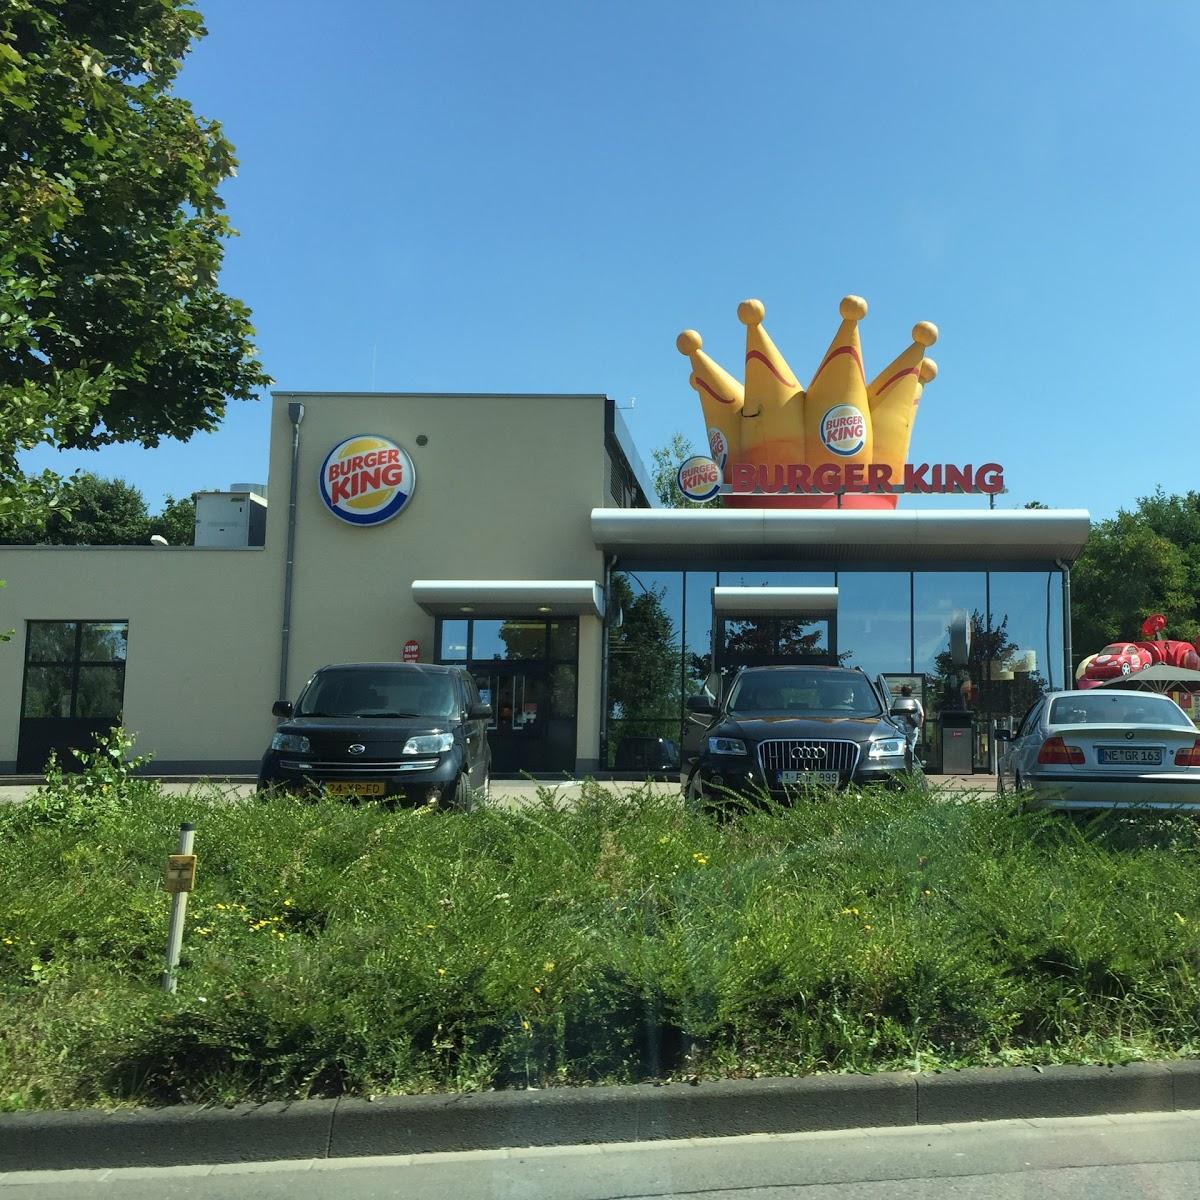 Restaurant "Burger King Restaurant" in Bitburg